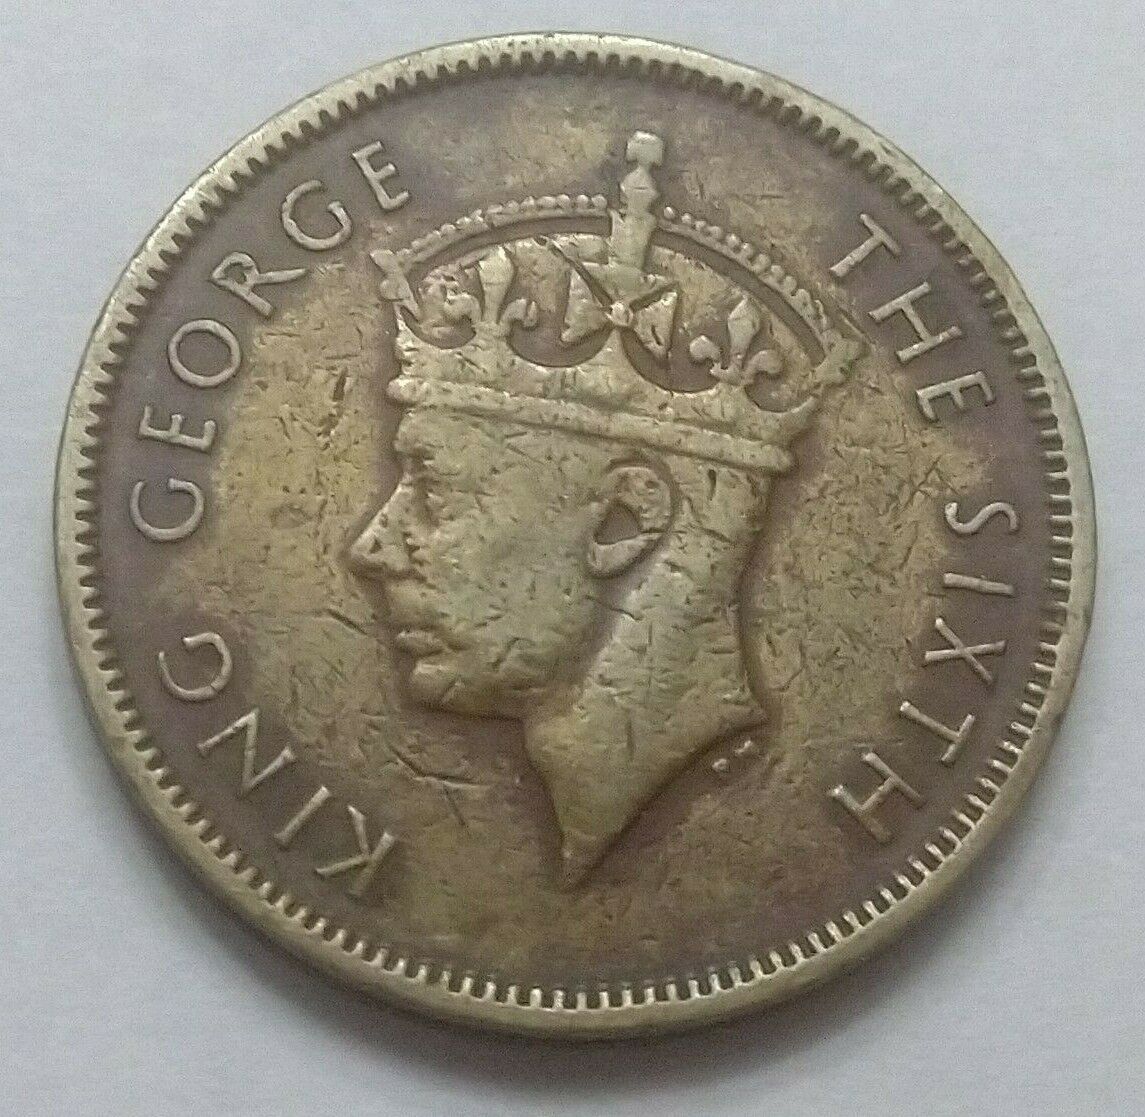 1949 Hong Kong George VI 10 Cents coin (Circulated)